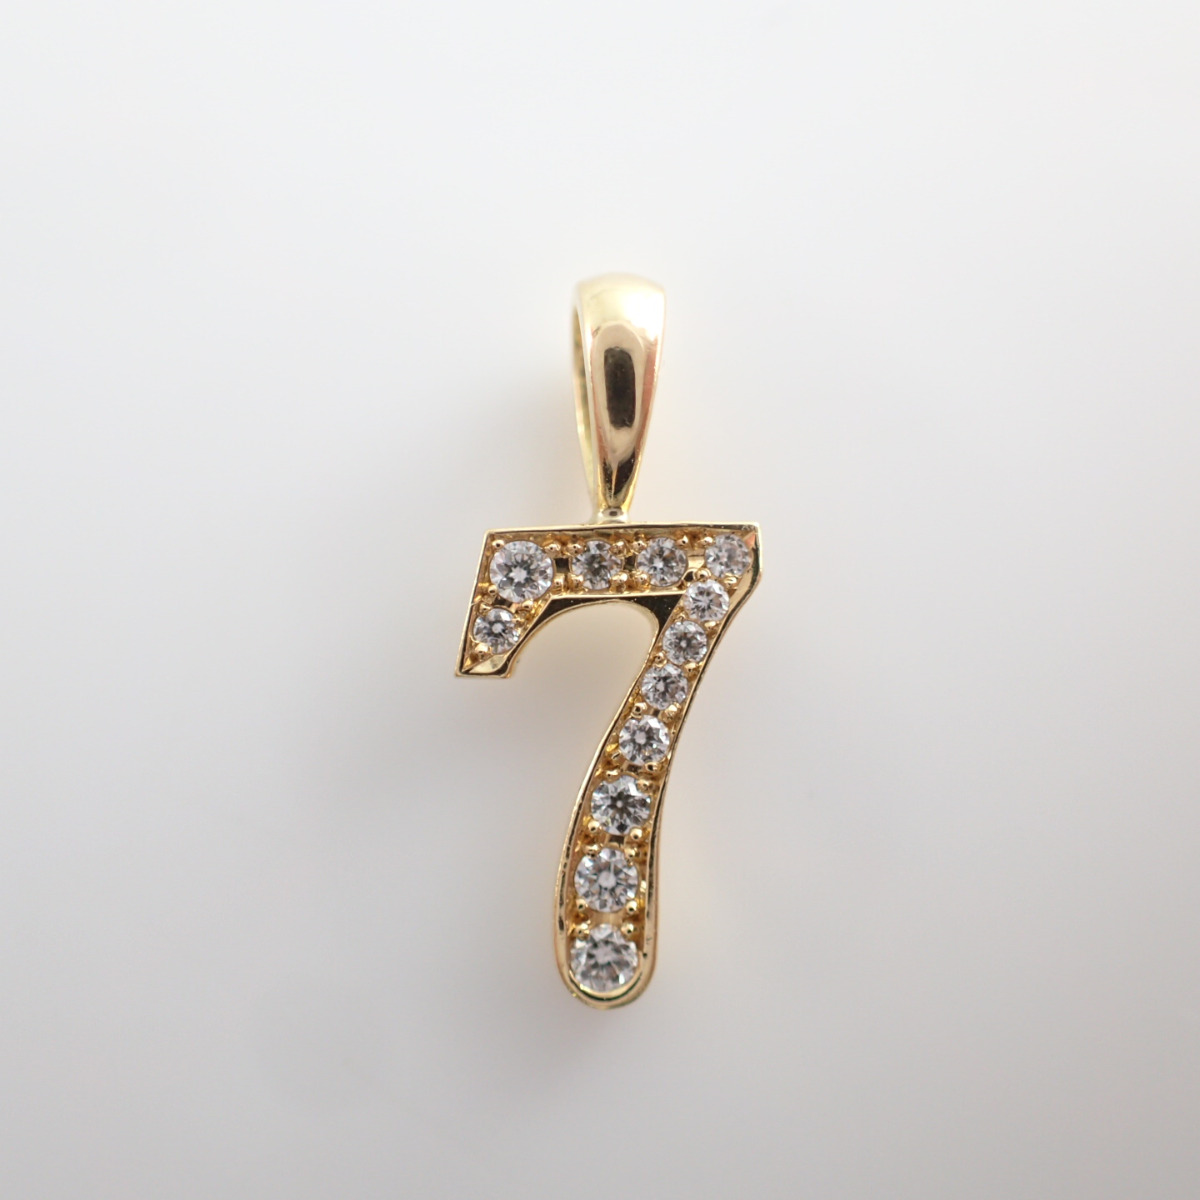 アイファニーの18KYG ダイヤモンド ナンバー NO.7 ペンダントトップの買取実績です。